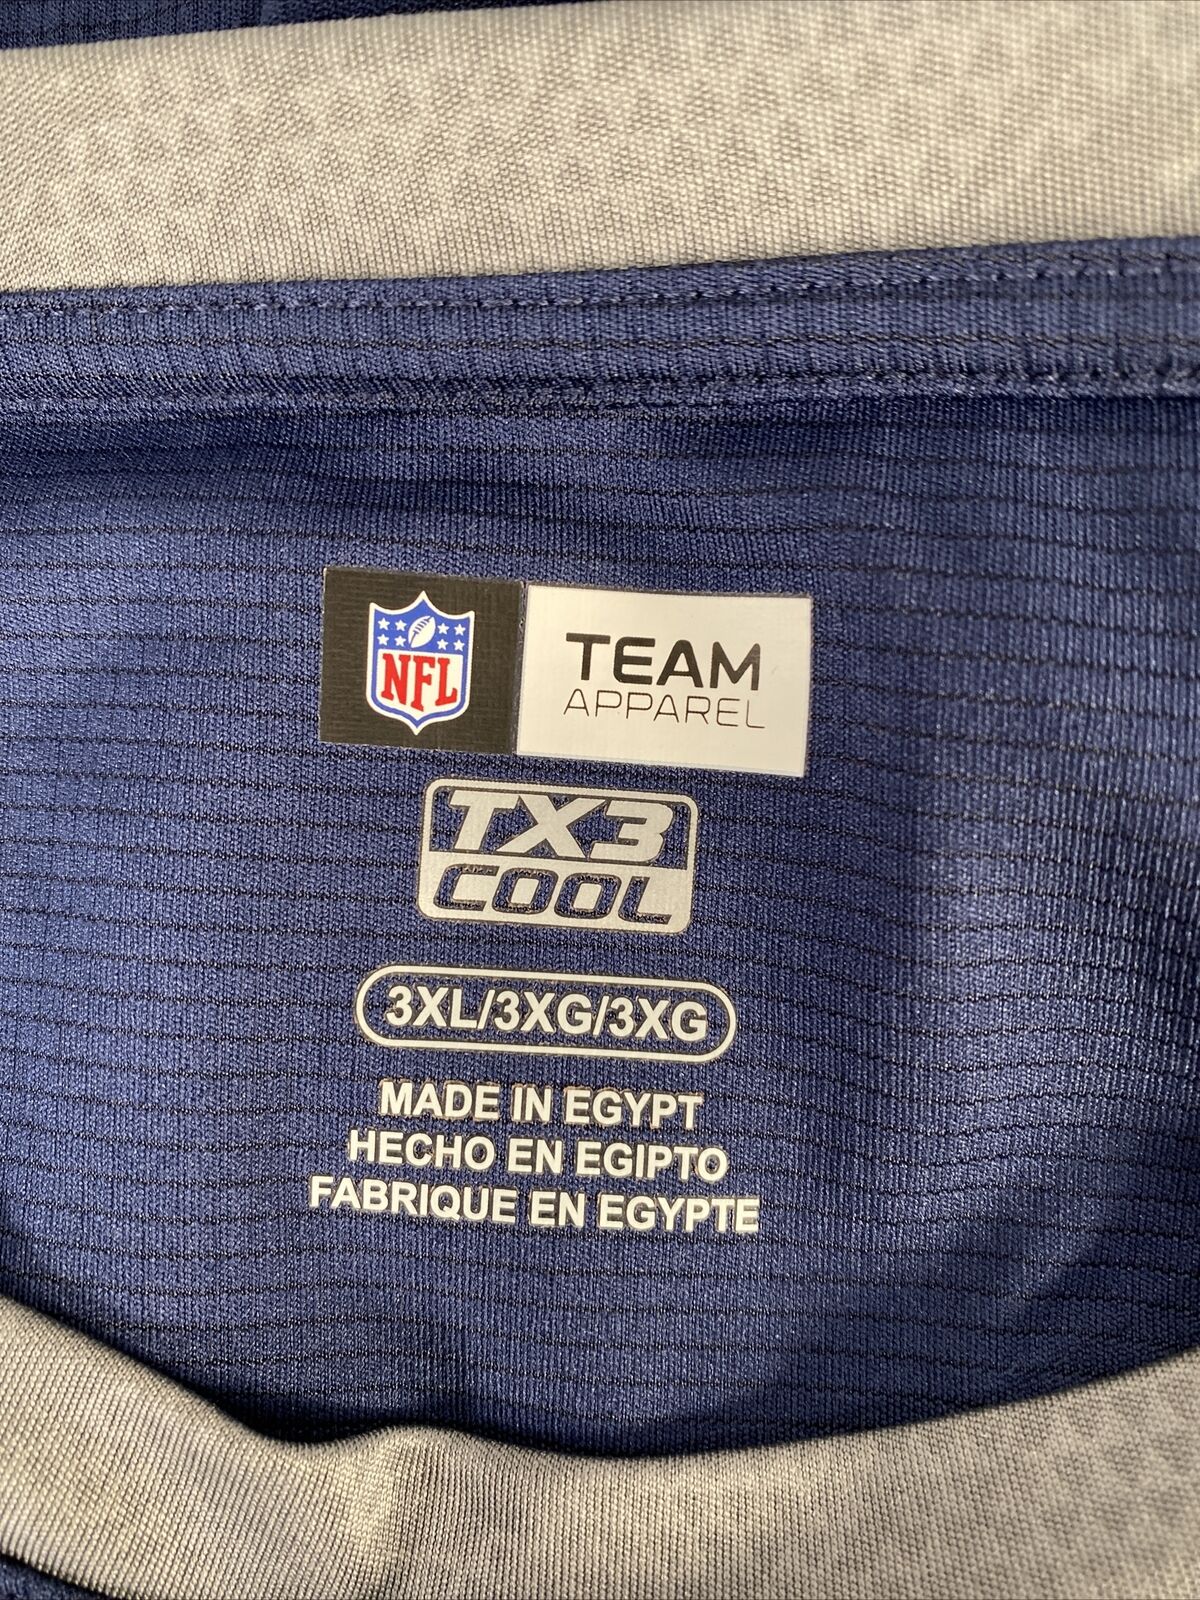 Camiseta de poliéster de manga corta de los Patriots azules del equipo de la NFL para hombre - 3XL